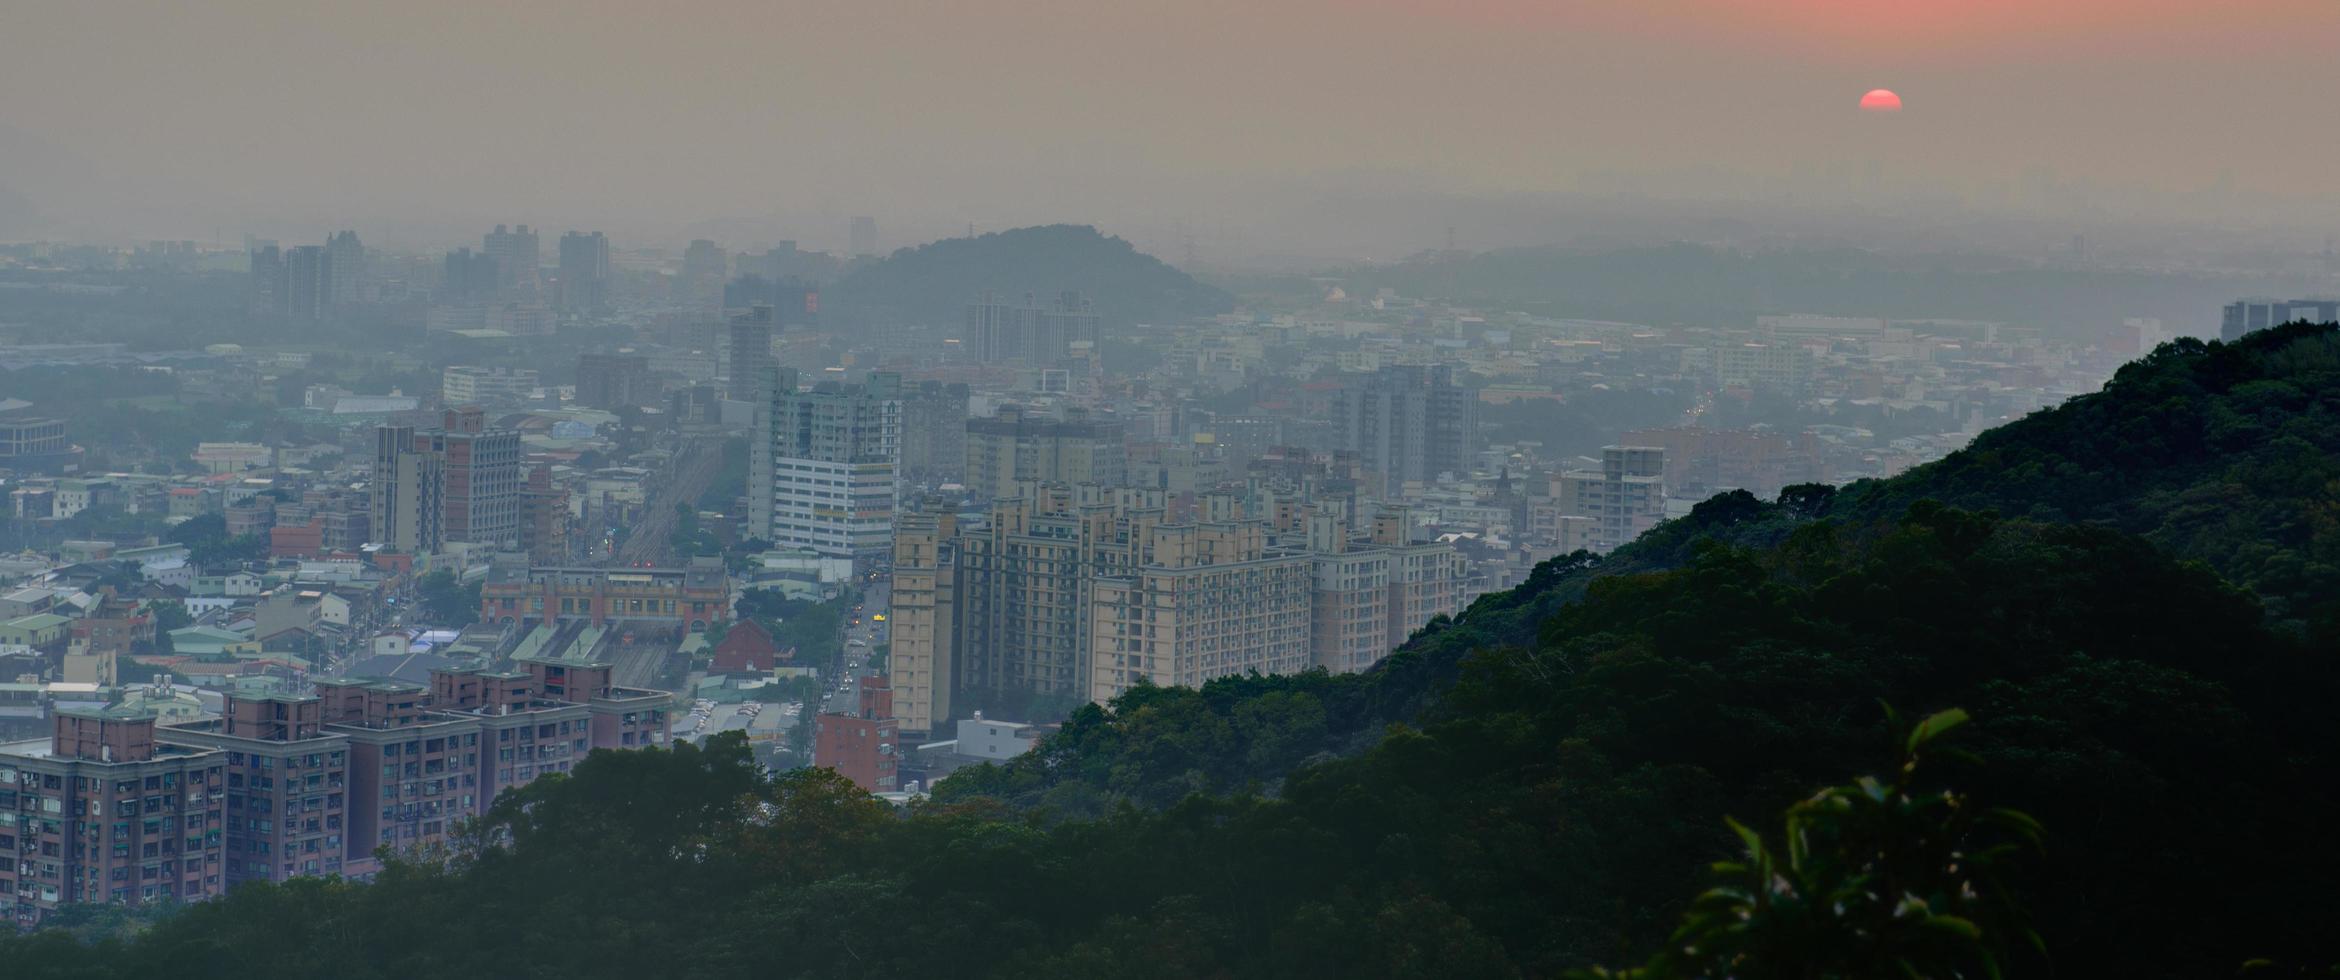 utsikt över en stad vid solnedgången från ett berg foto